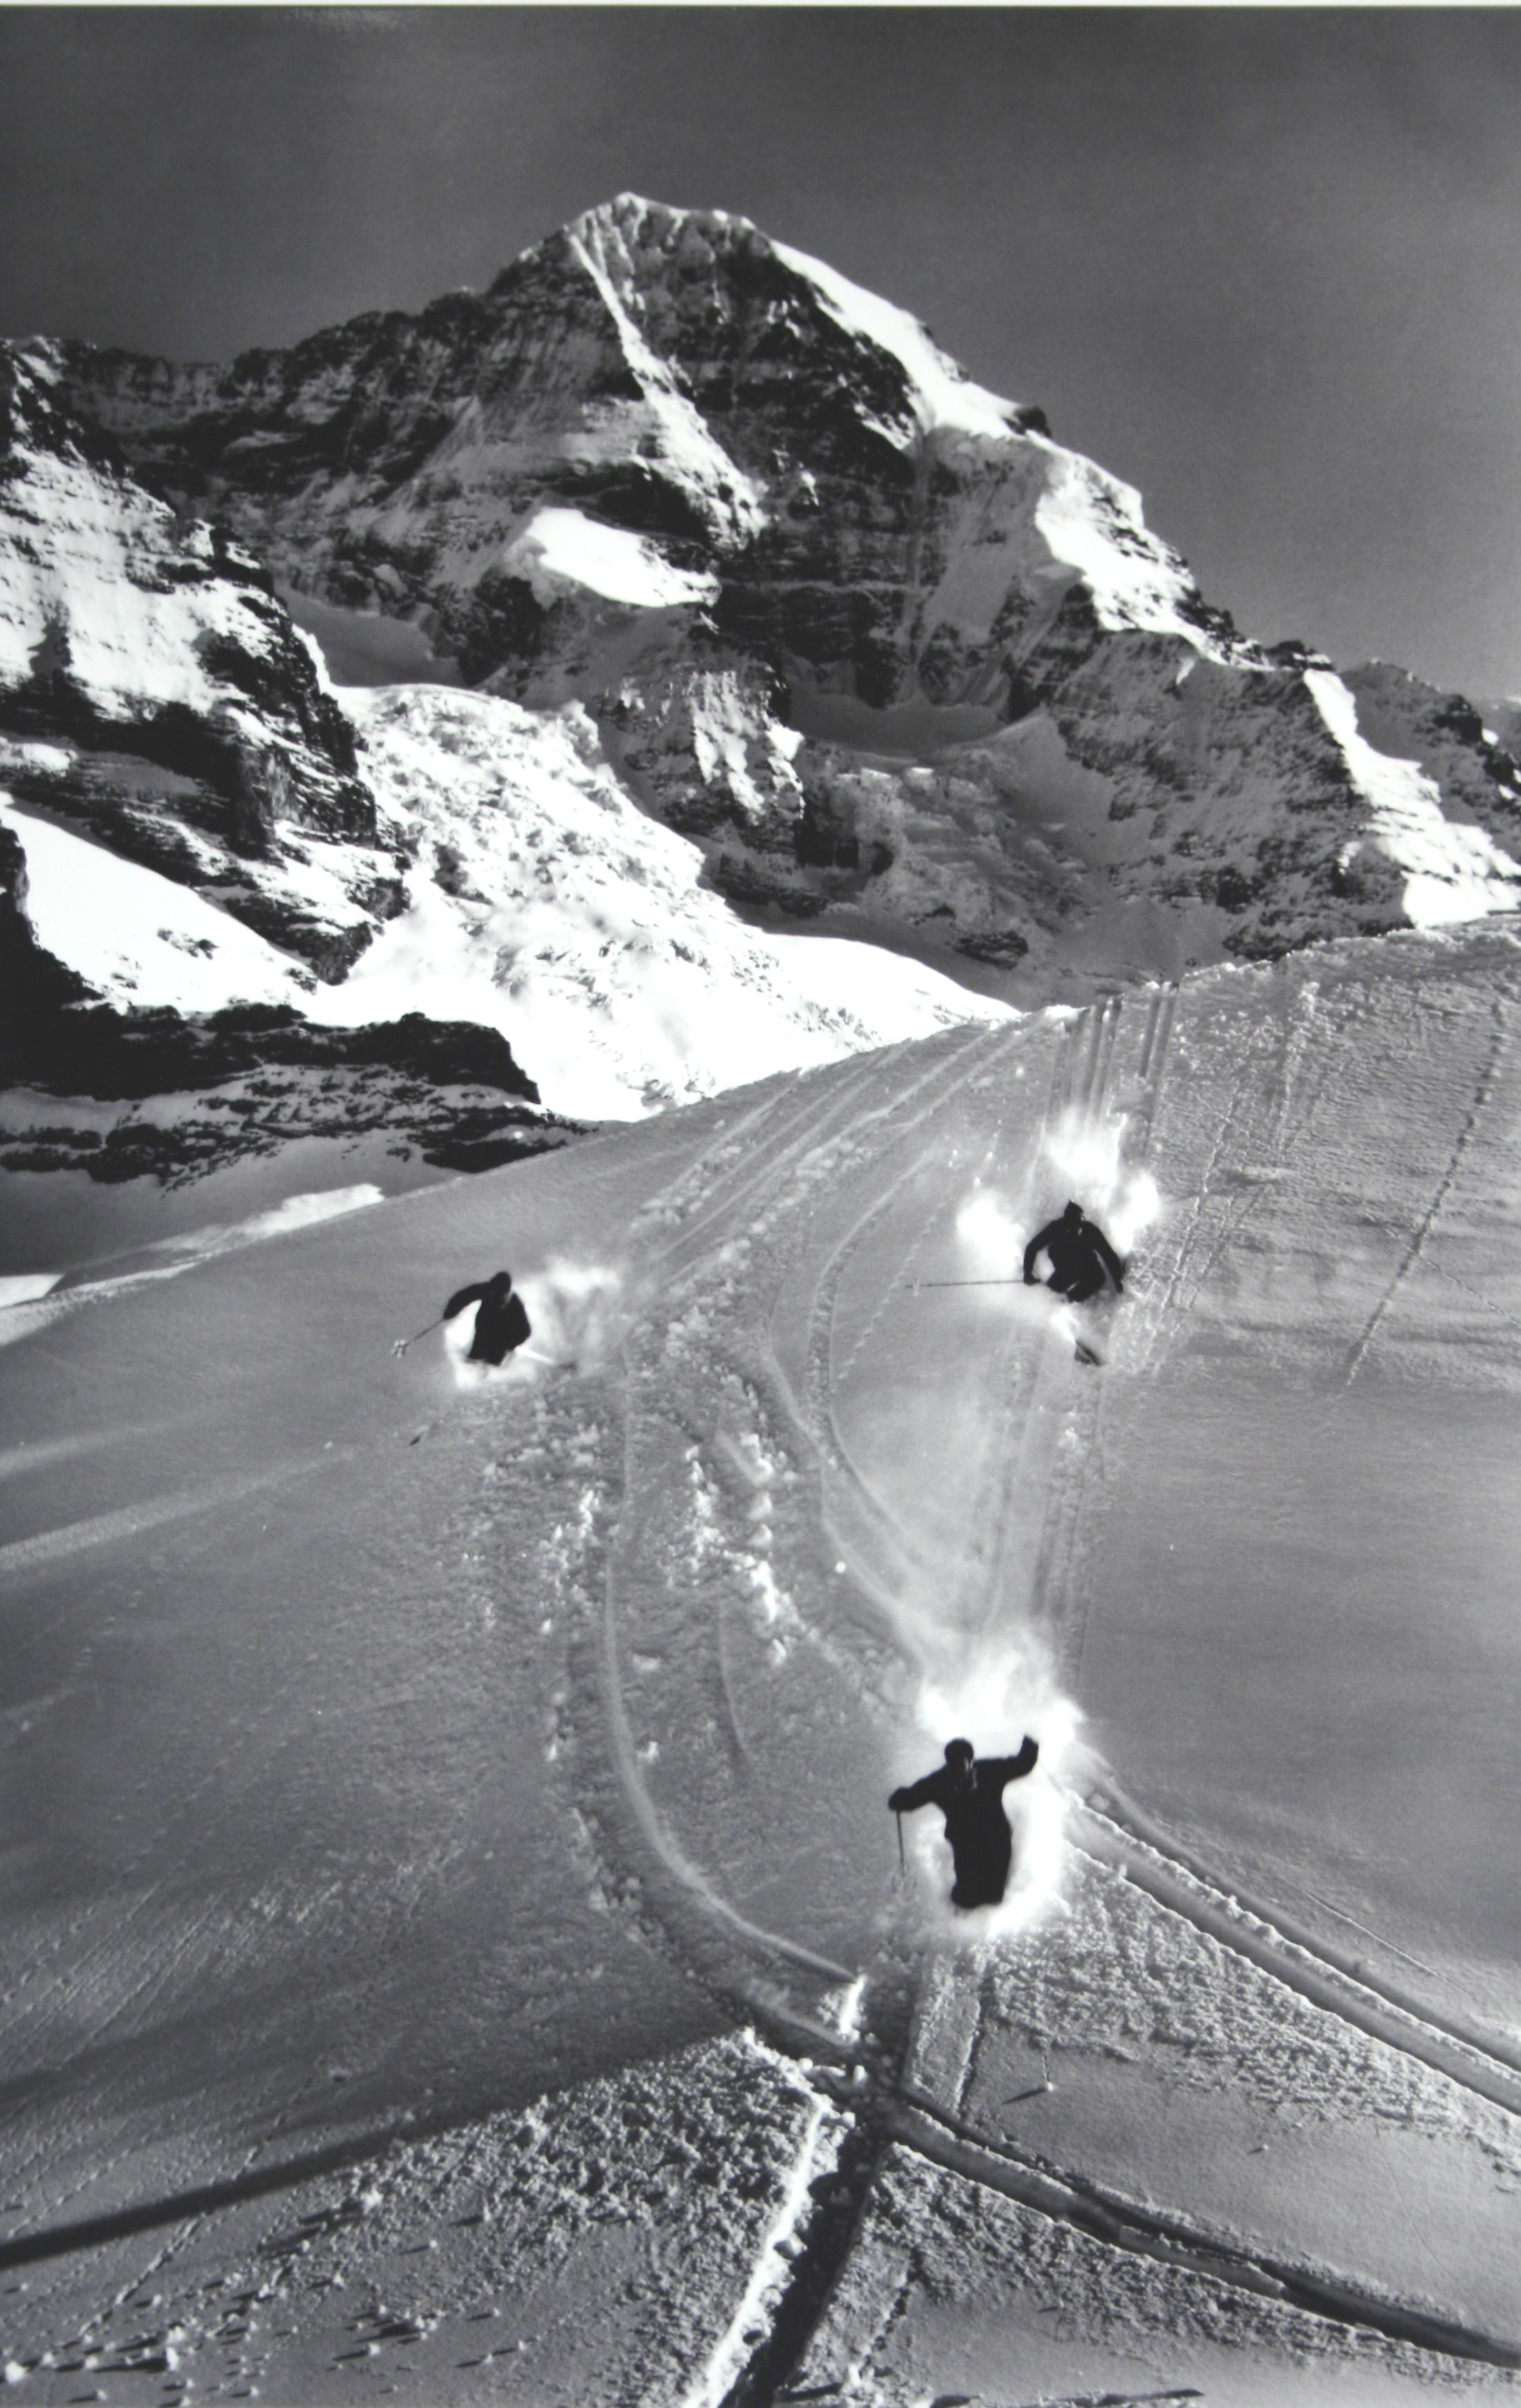 British Alpine Ski Photograph, 'Scheidegg' Taken from Original 1930s Photograph For Sale